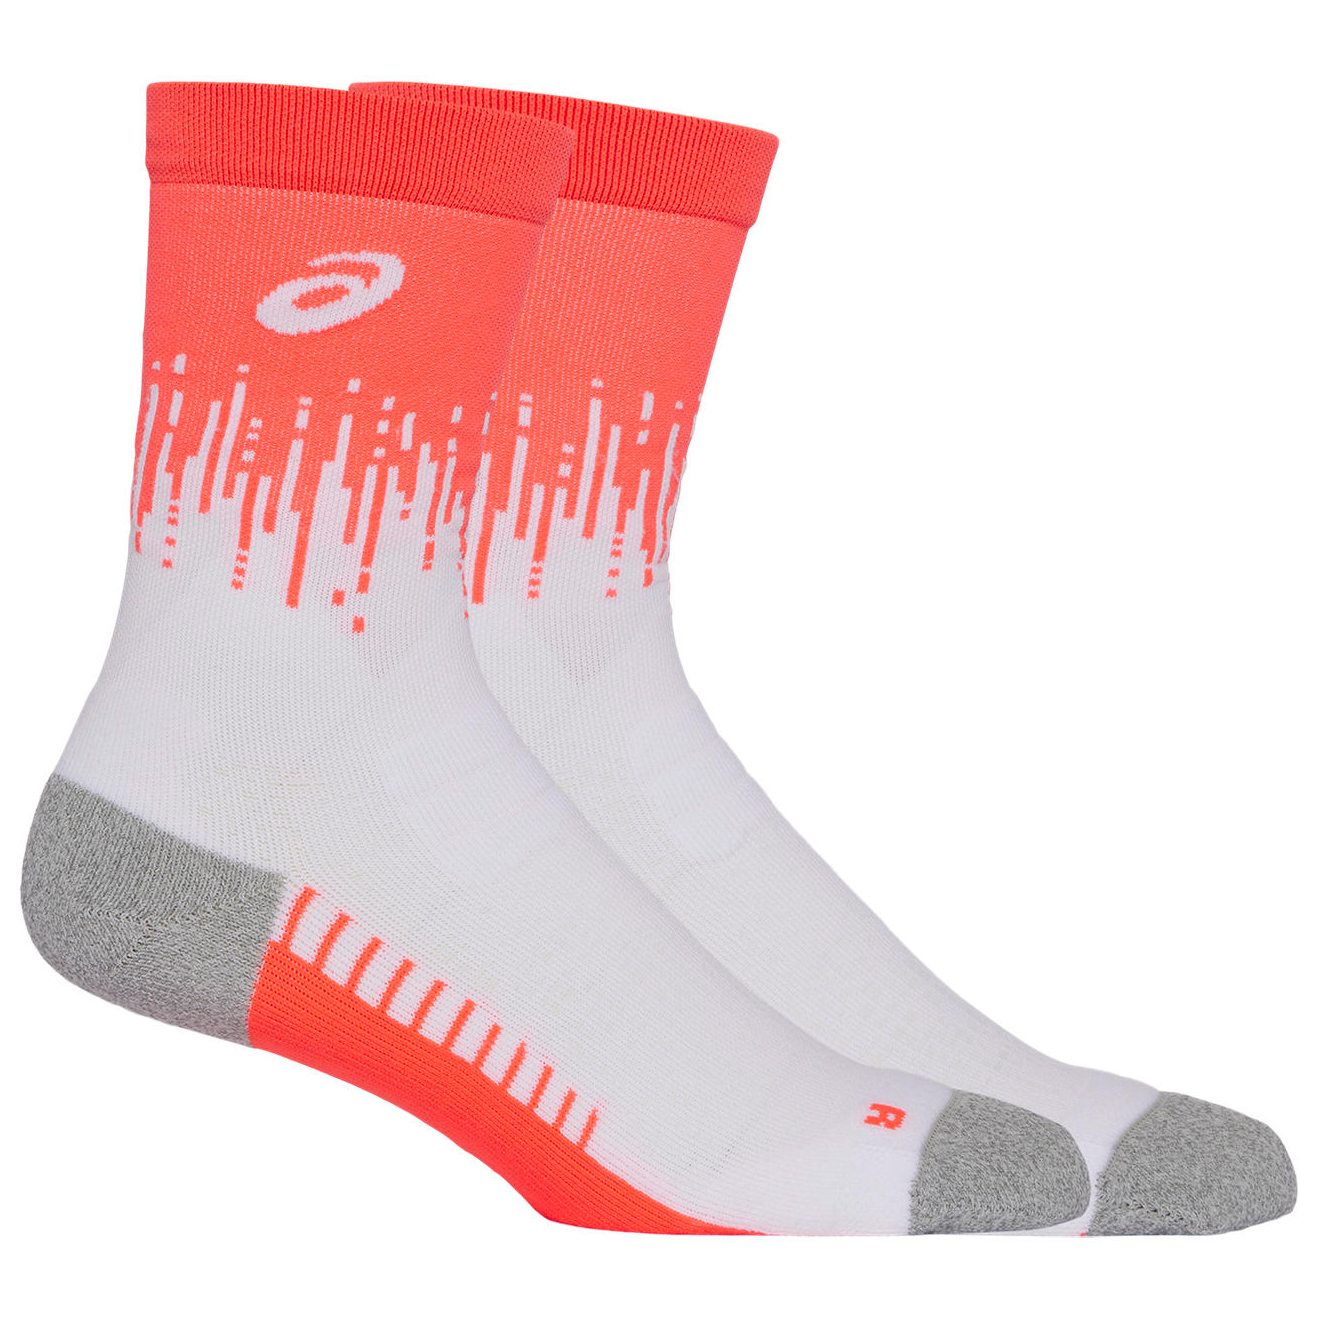 спортивные носки performance run crew sock unisex asics цвет black Носки для бега Asics Performance Run Sock Crew, цвет Sunrise Red/Brilliant White